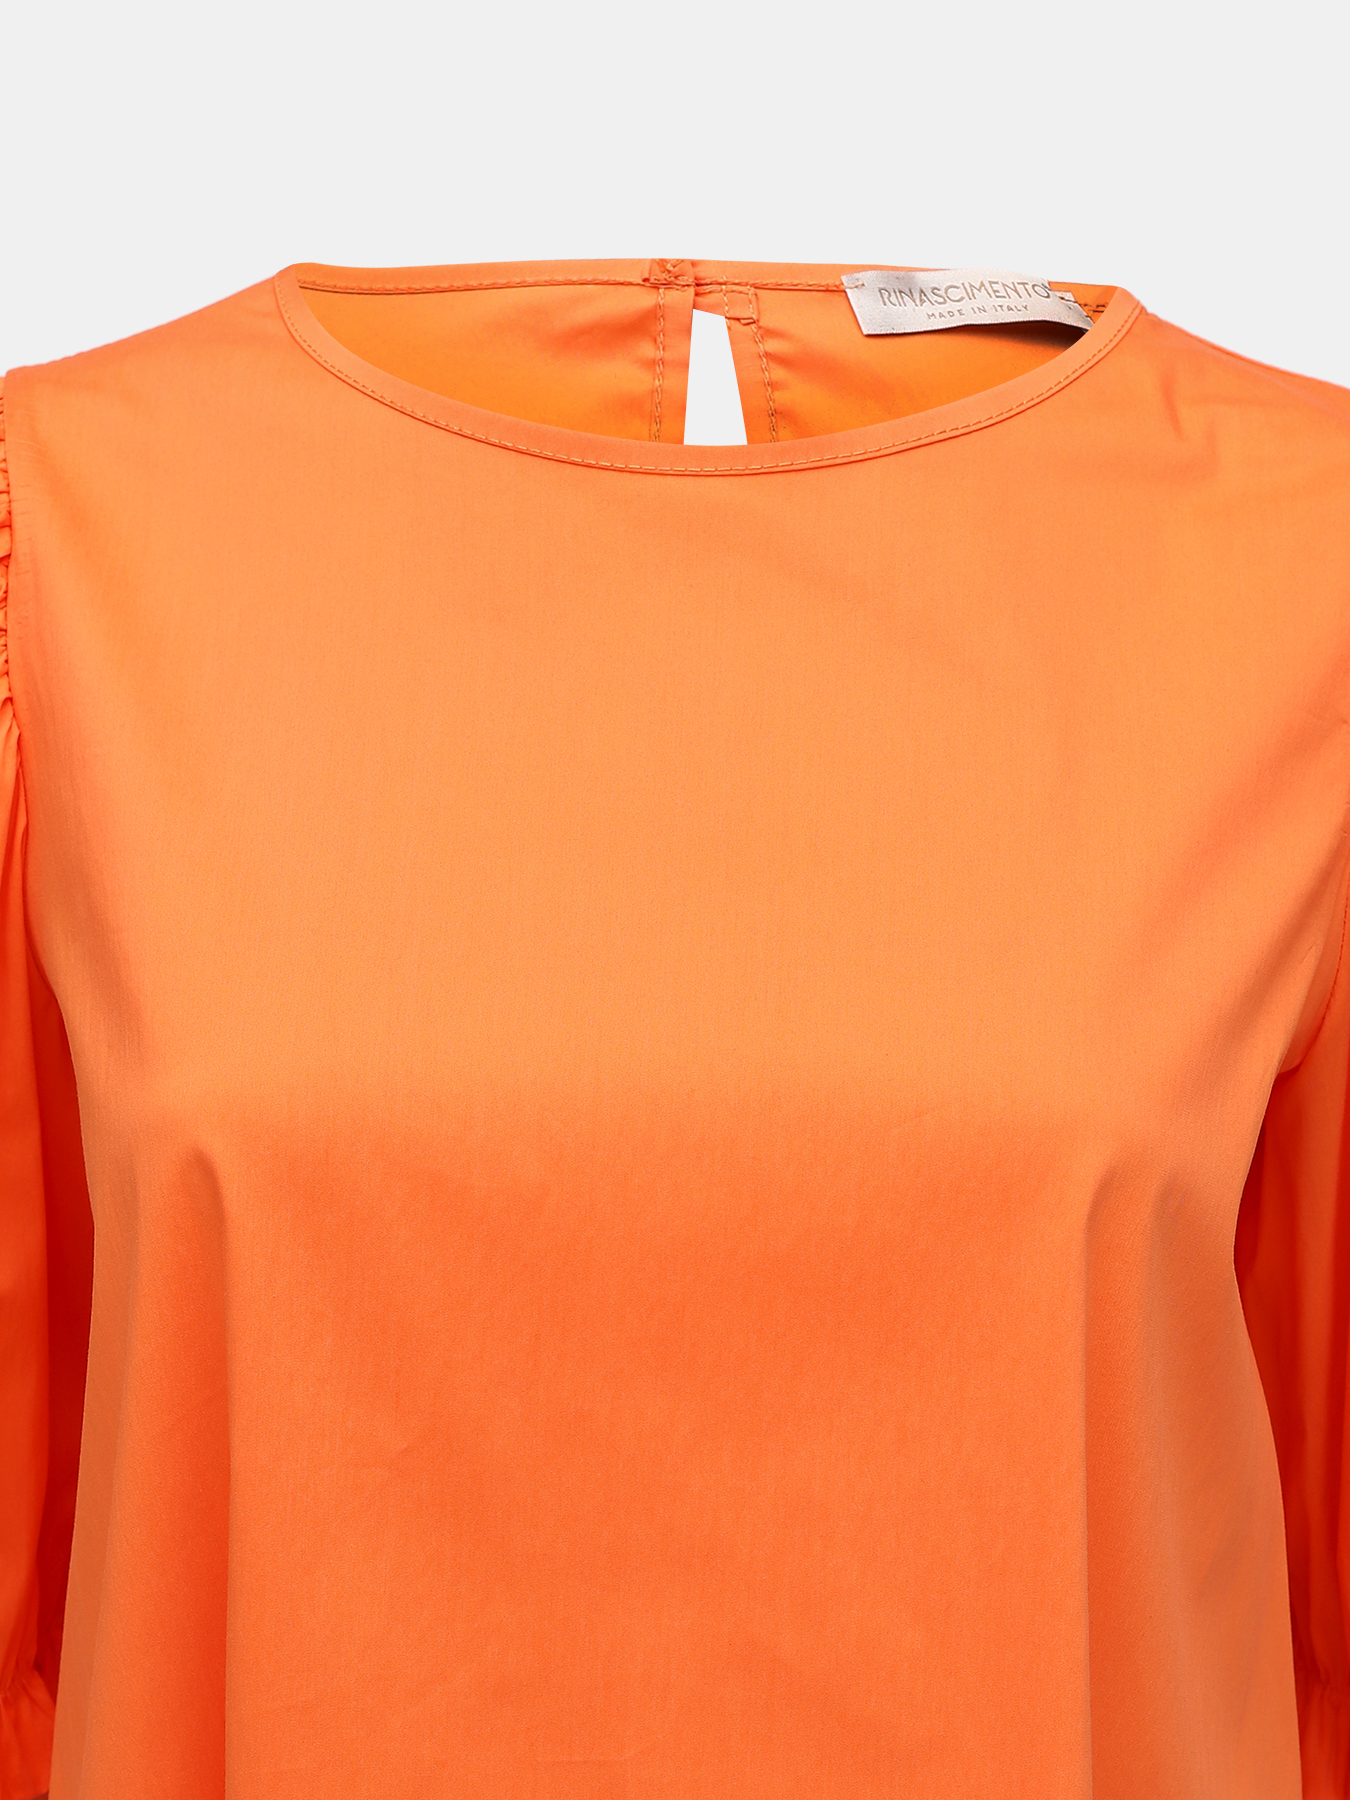 Блузка Rinascimento 392399-044, цвет оранжевый, размер 46-48 - фото 2